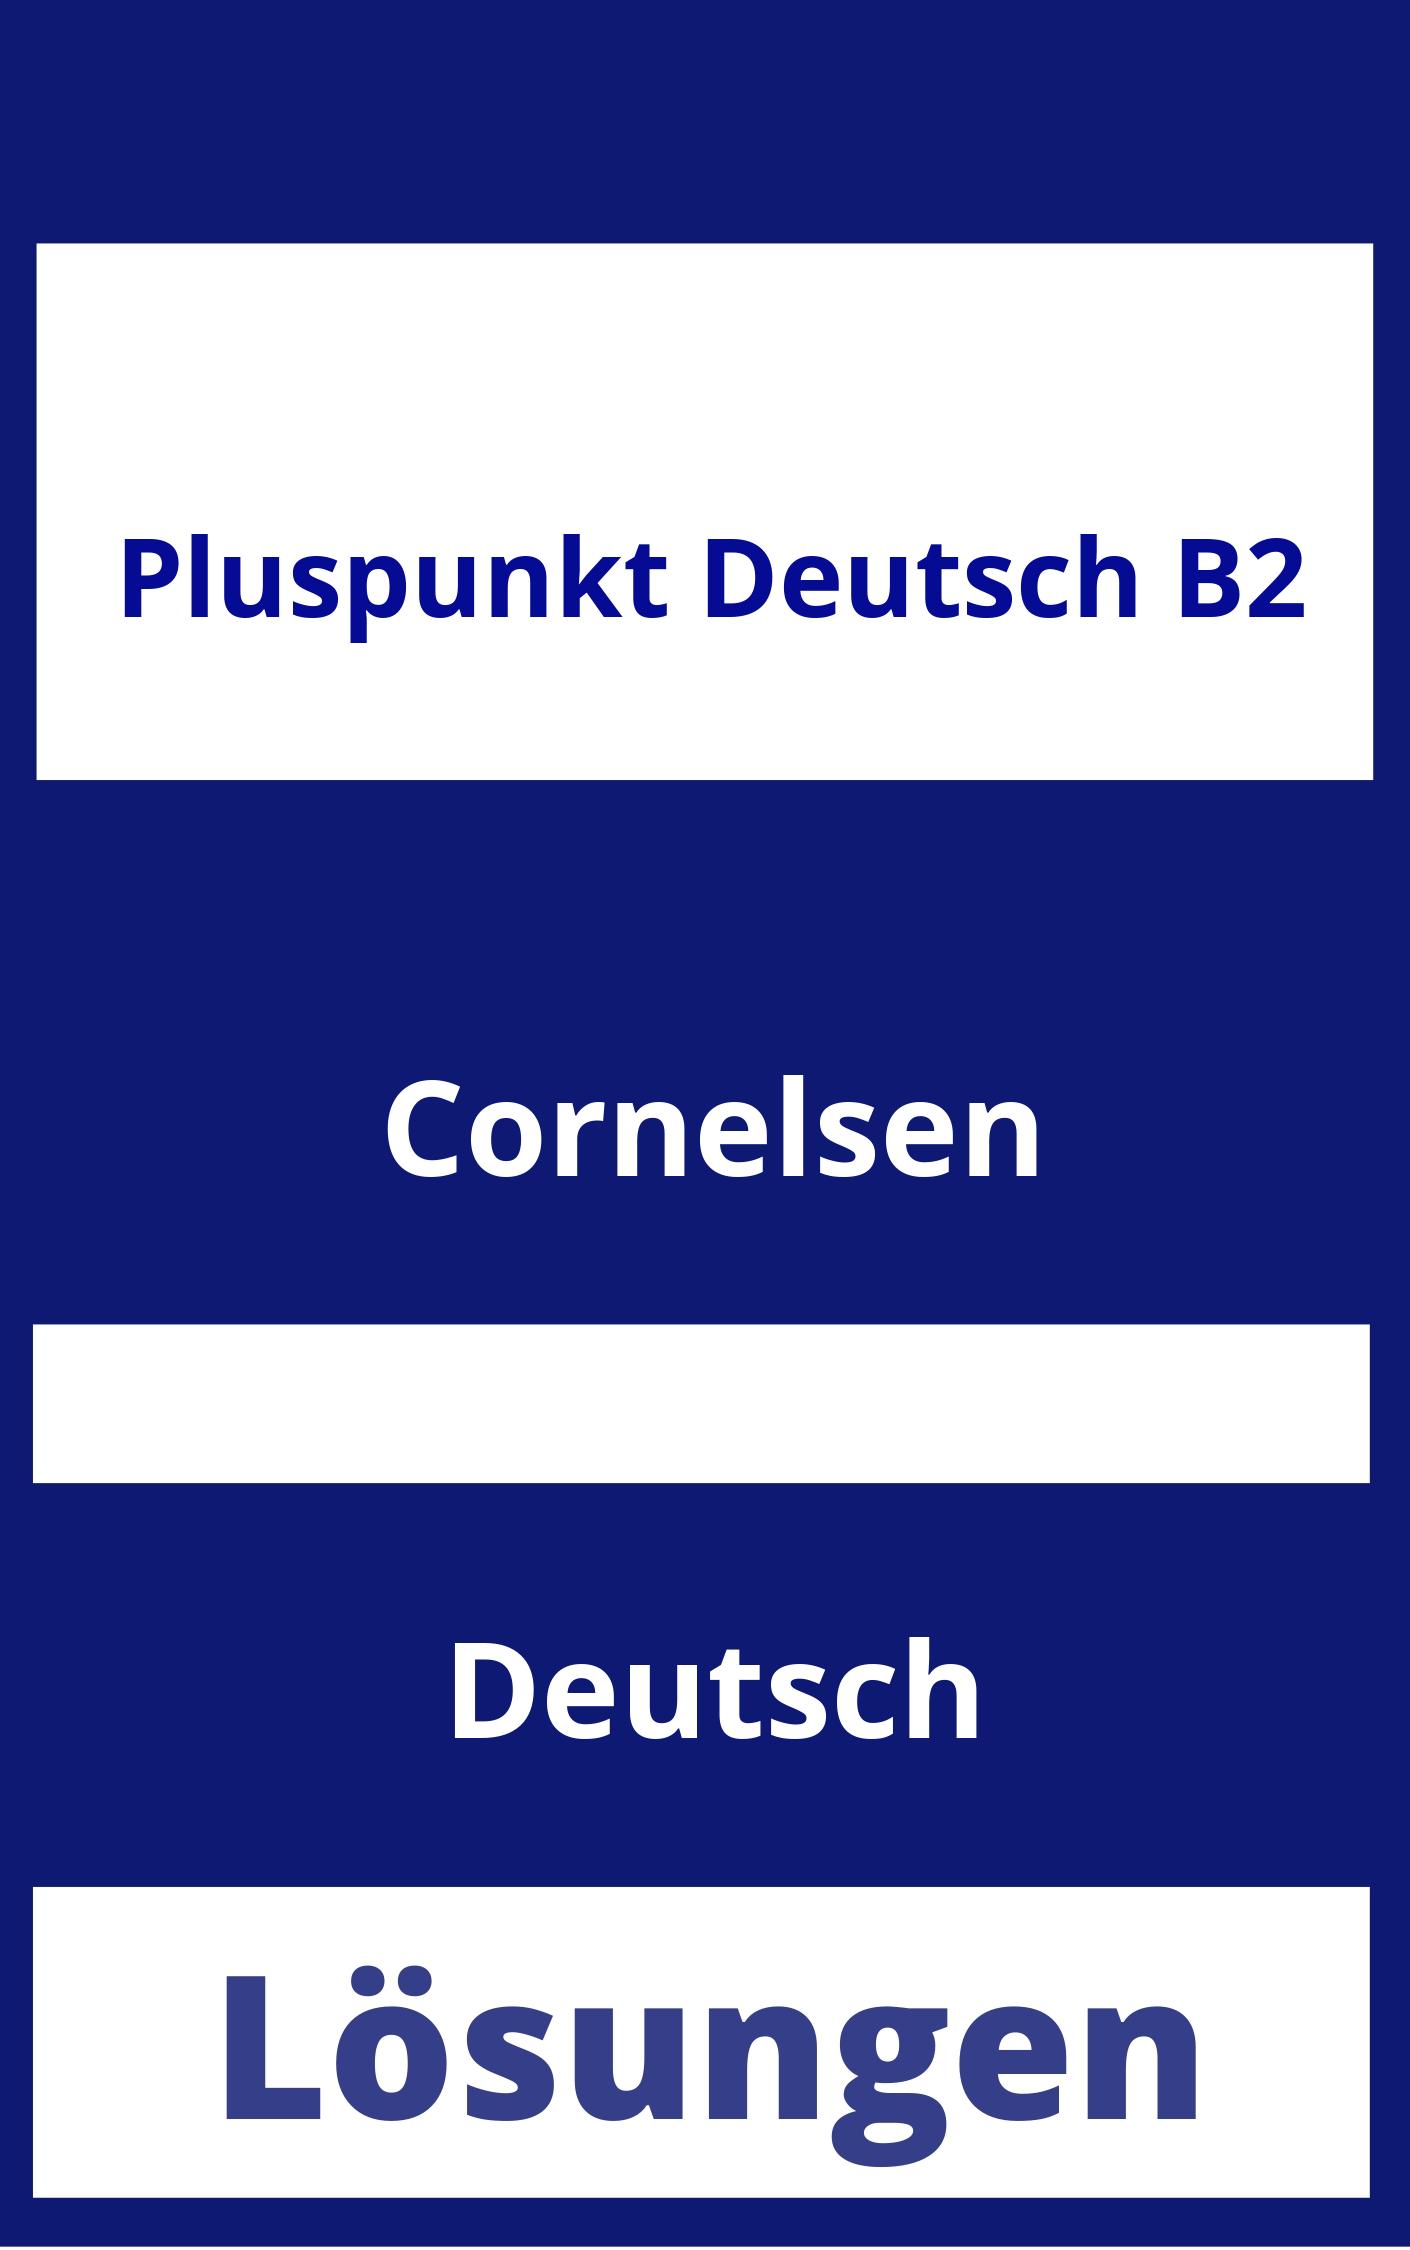 Pluspunkt Deutsch B2 Lösungen PDF